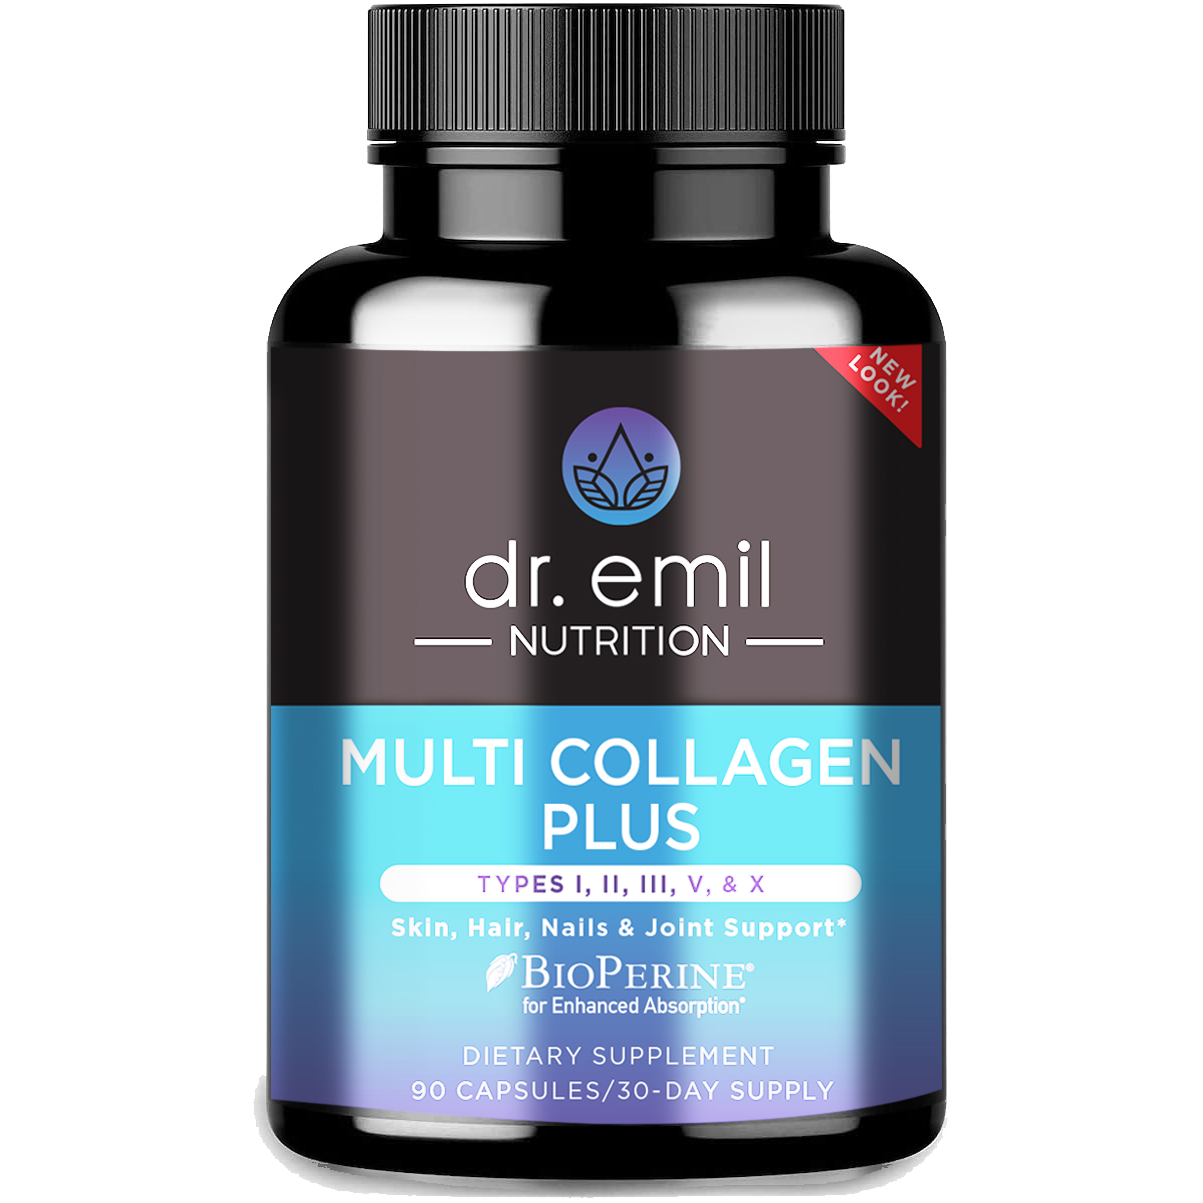 Multi Collagen Plus by Dr Emil Nutrition